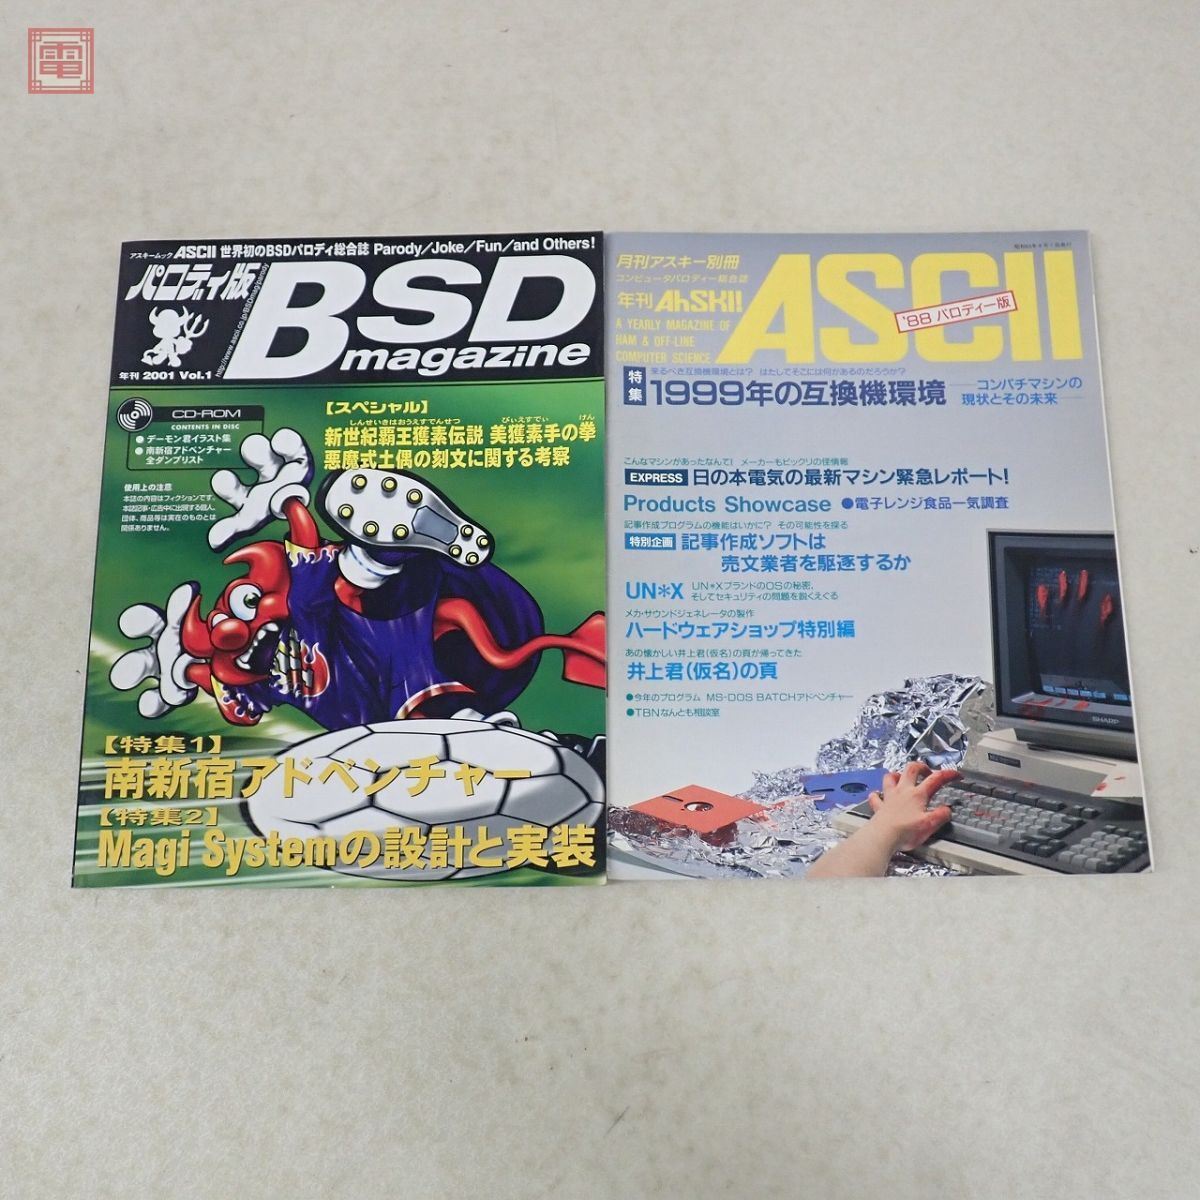  журнал ежемесячный ASCII paroti- версия год .AhSKI! 1983~85/87/88 год переиздание paroti версия год .BSD magazine совместно 7 шт. комплект ASCII[10